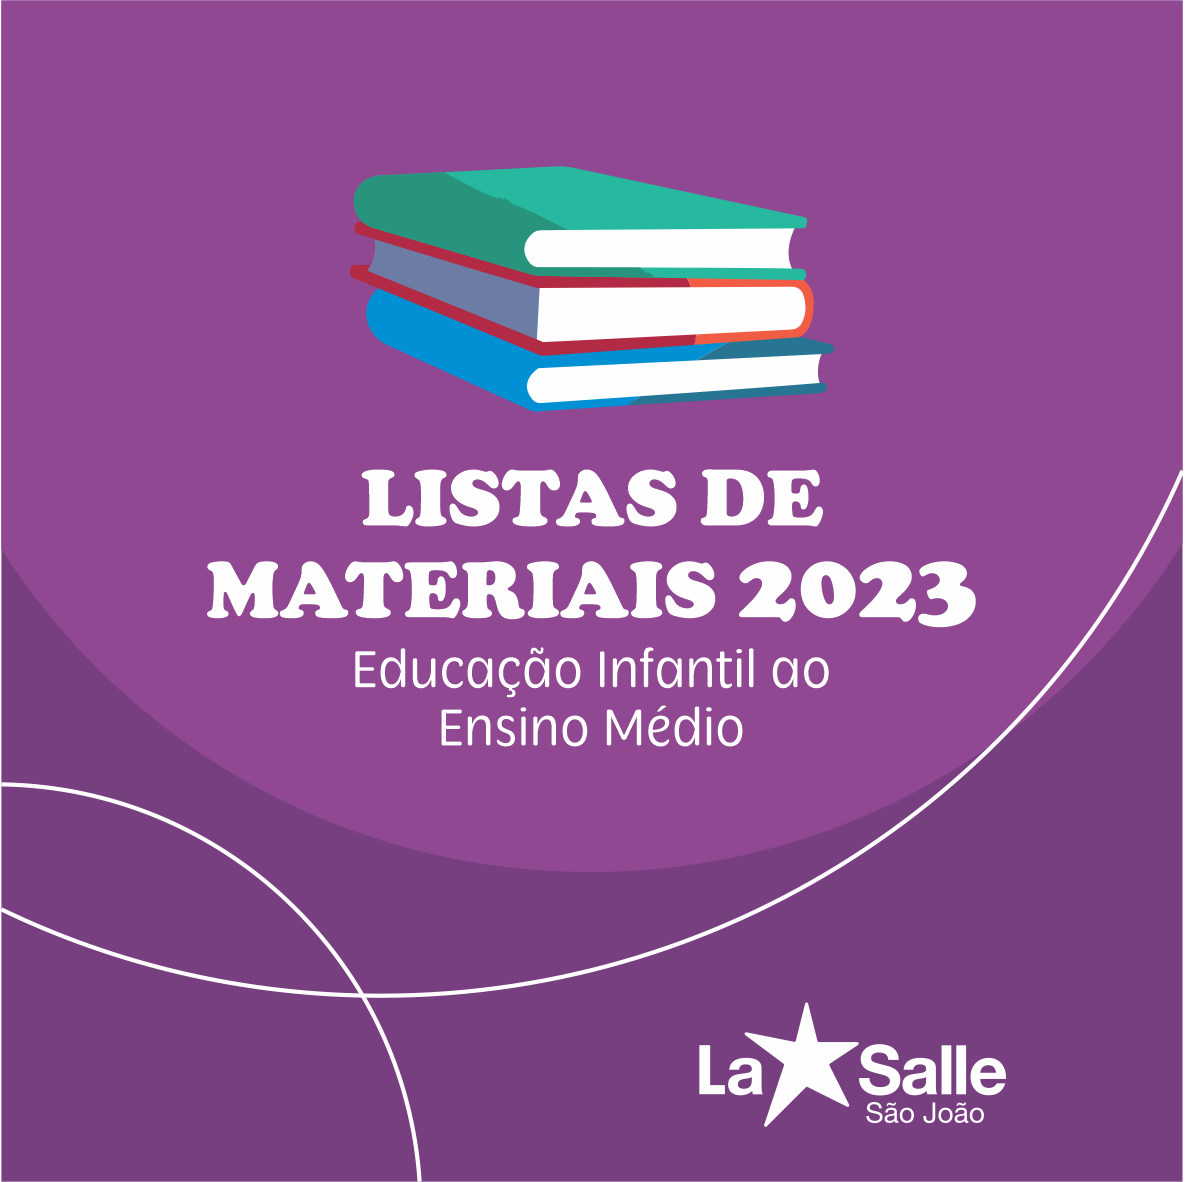 Lista de Material 2023